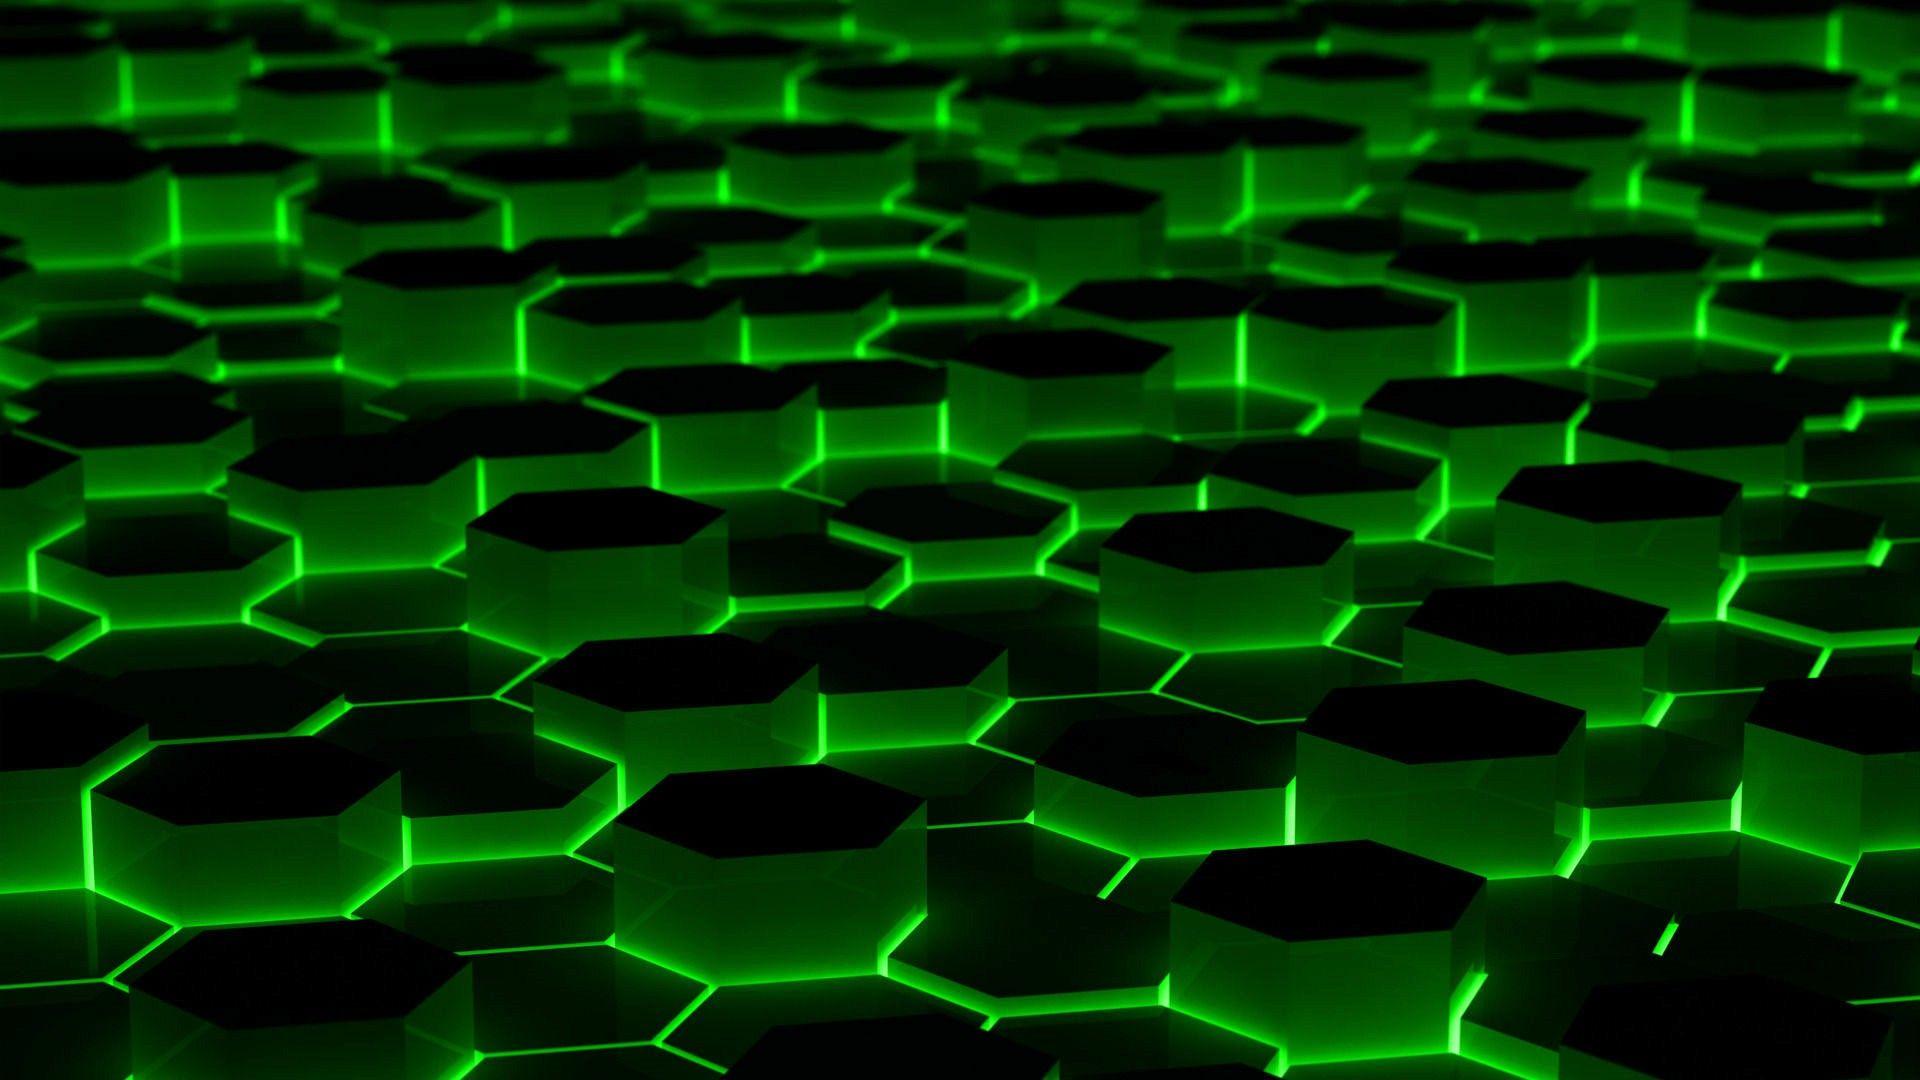 Hình nền máy tính nhiều hình ảnh neon xanh lá cây đang chờ đón bạn khám phá. Với tông màu tươi sáng, nó sẽ giúp đem lại sự nổi bật và tươi mới cho màn hình của bạn.